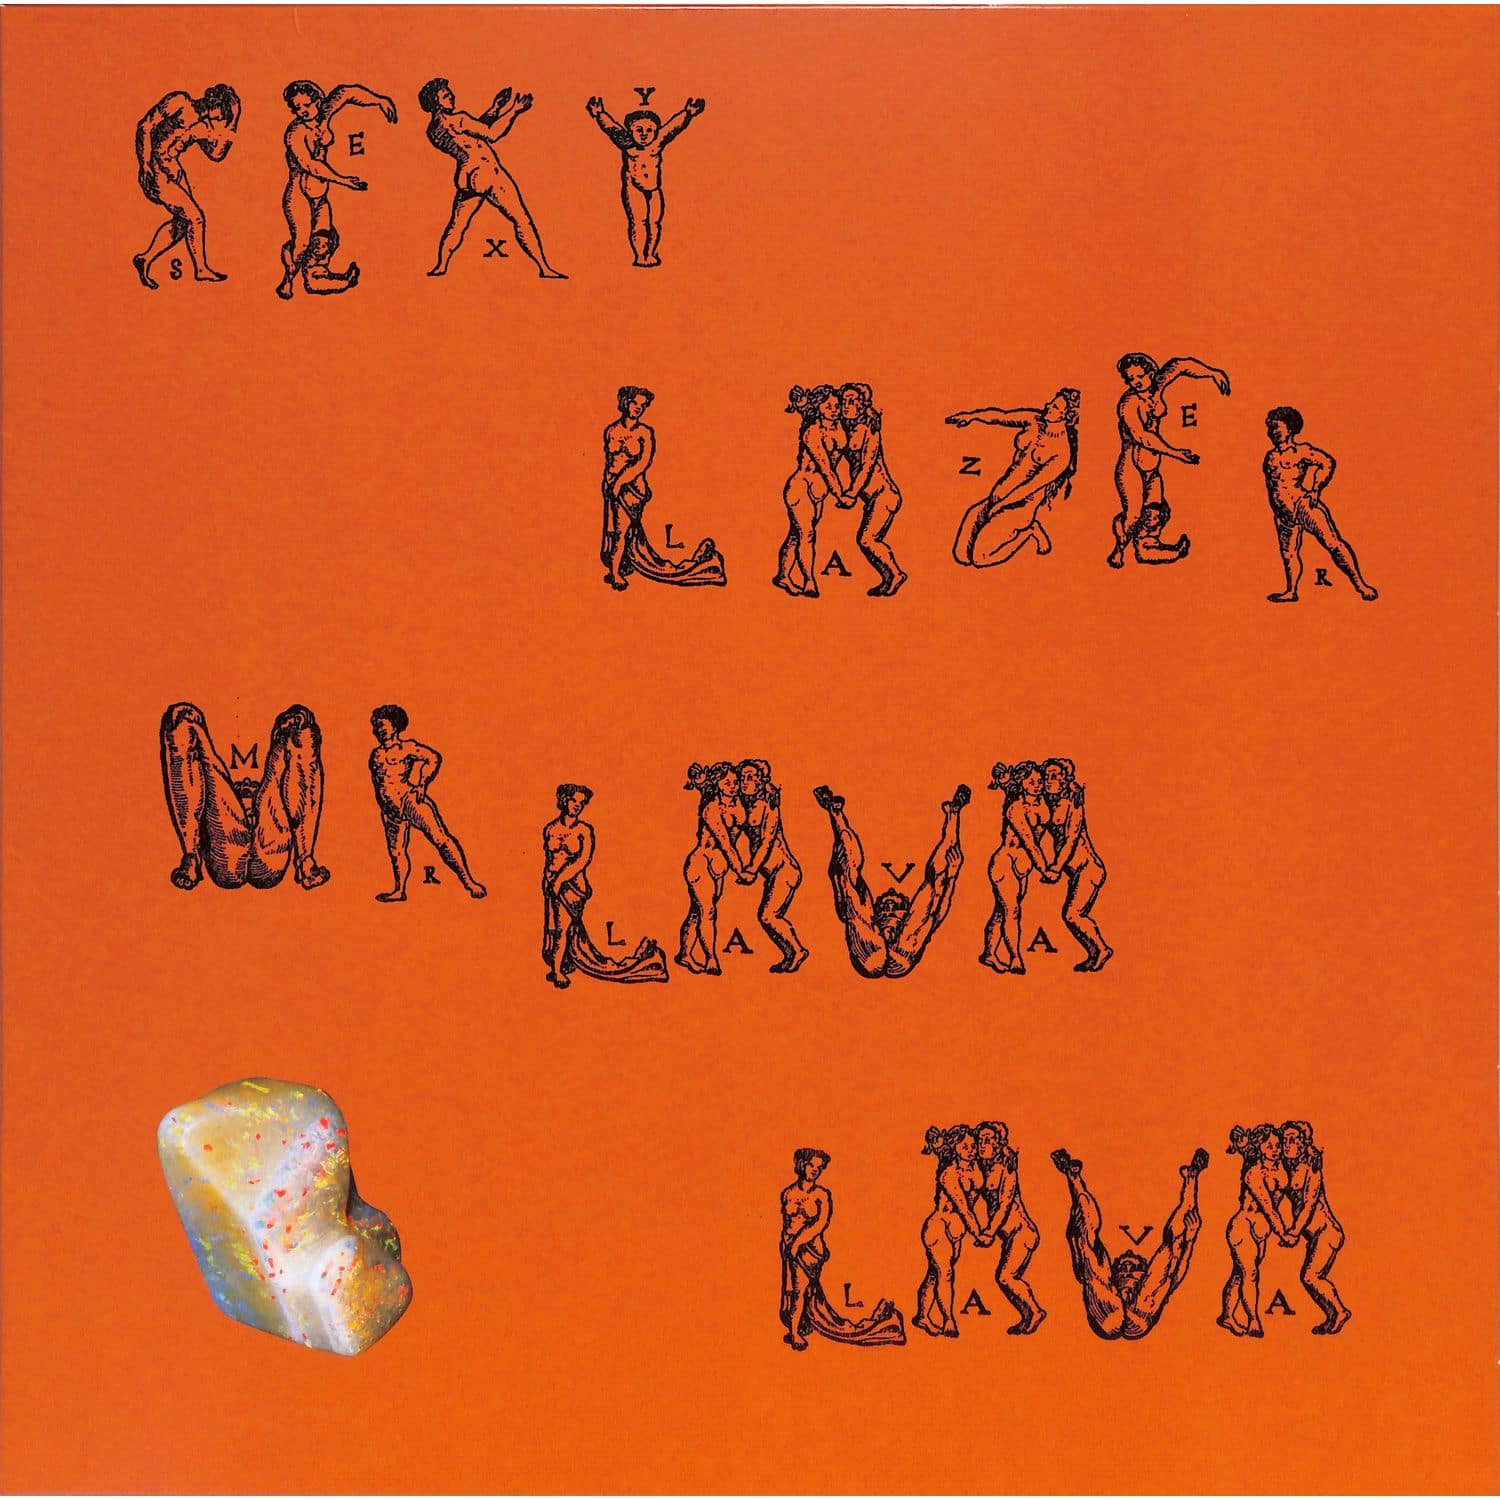 Sexy Lazer - MR. LAVA LAVA